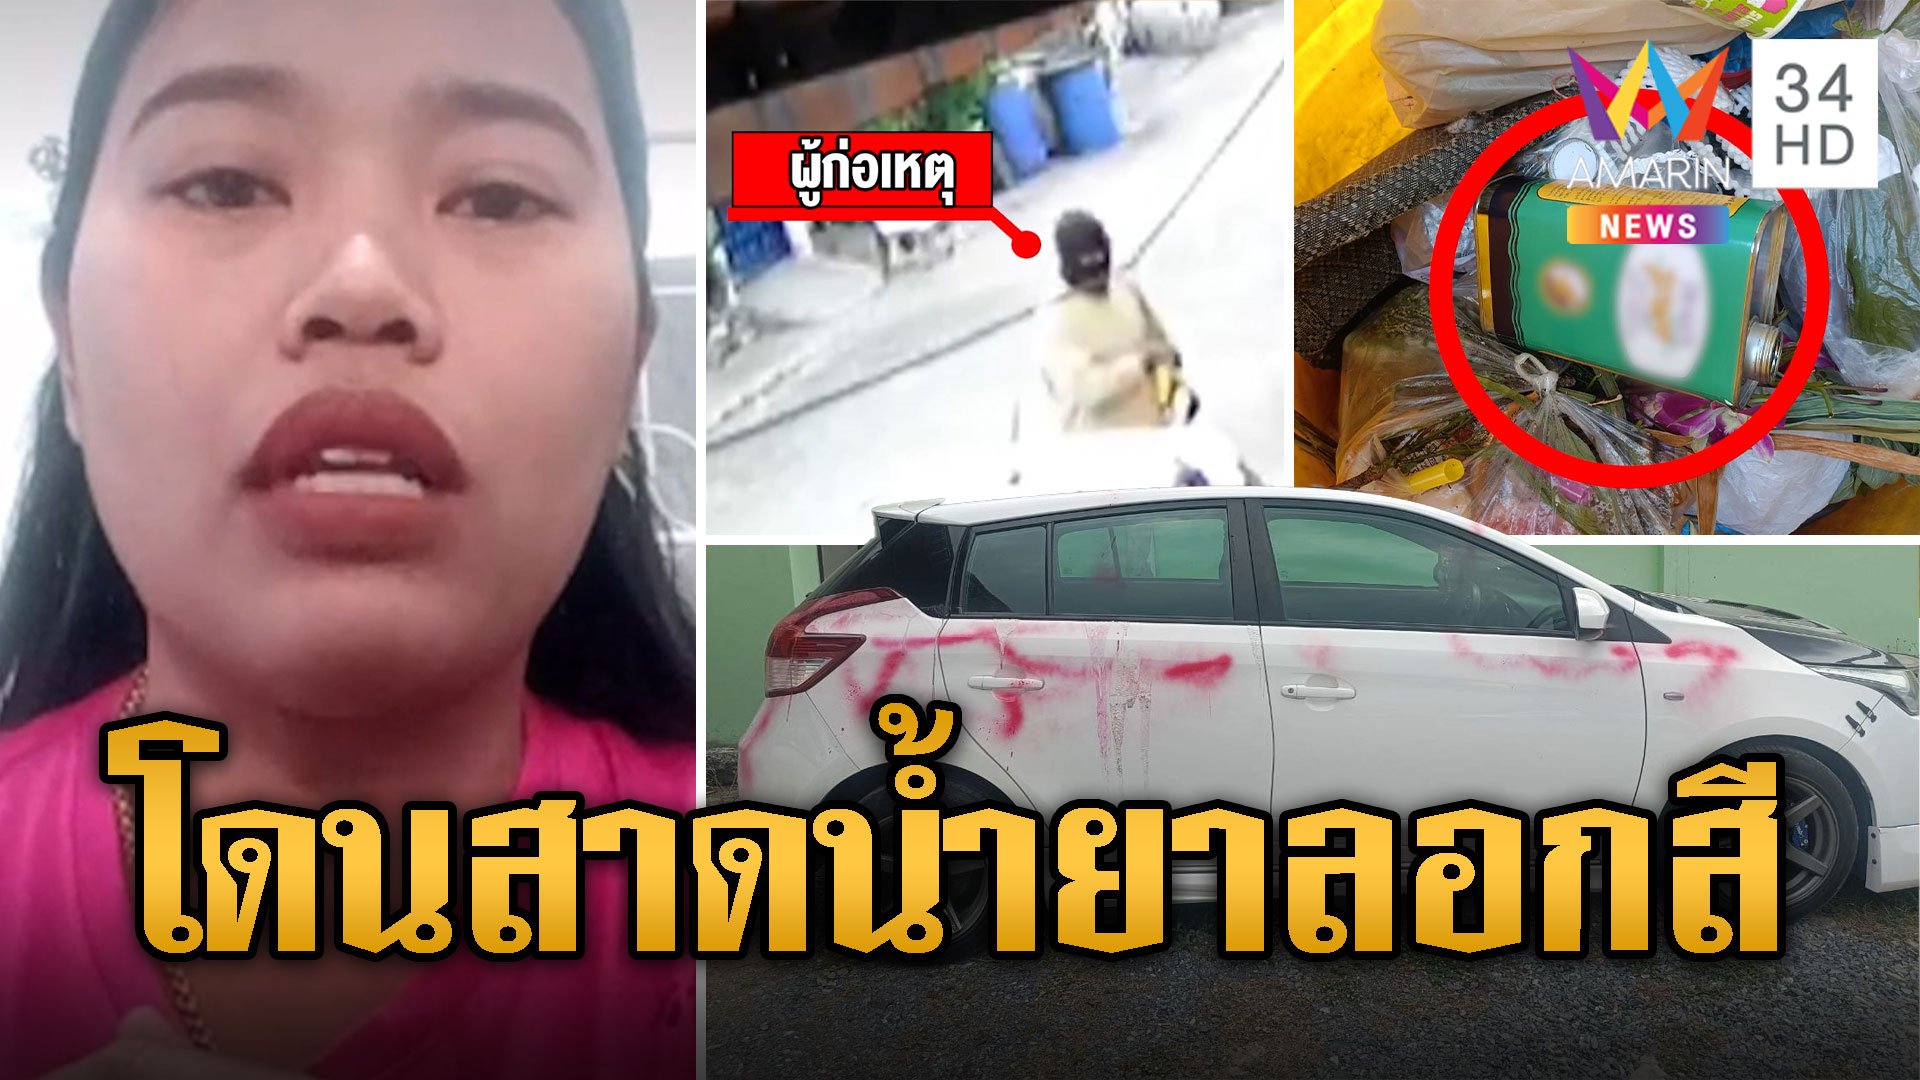 แม่ค้าสาวผวา! ชายปริศนาบุกสาดน้ำยาลอกสีรถเสียหายทั้งคัน | ข่าวเที่ยงอมรินทร์ | 31 ม.ค. 67 | AMARIN TVHD34